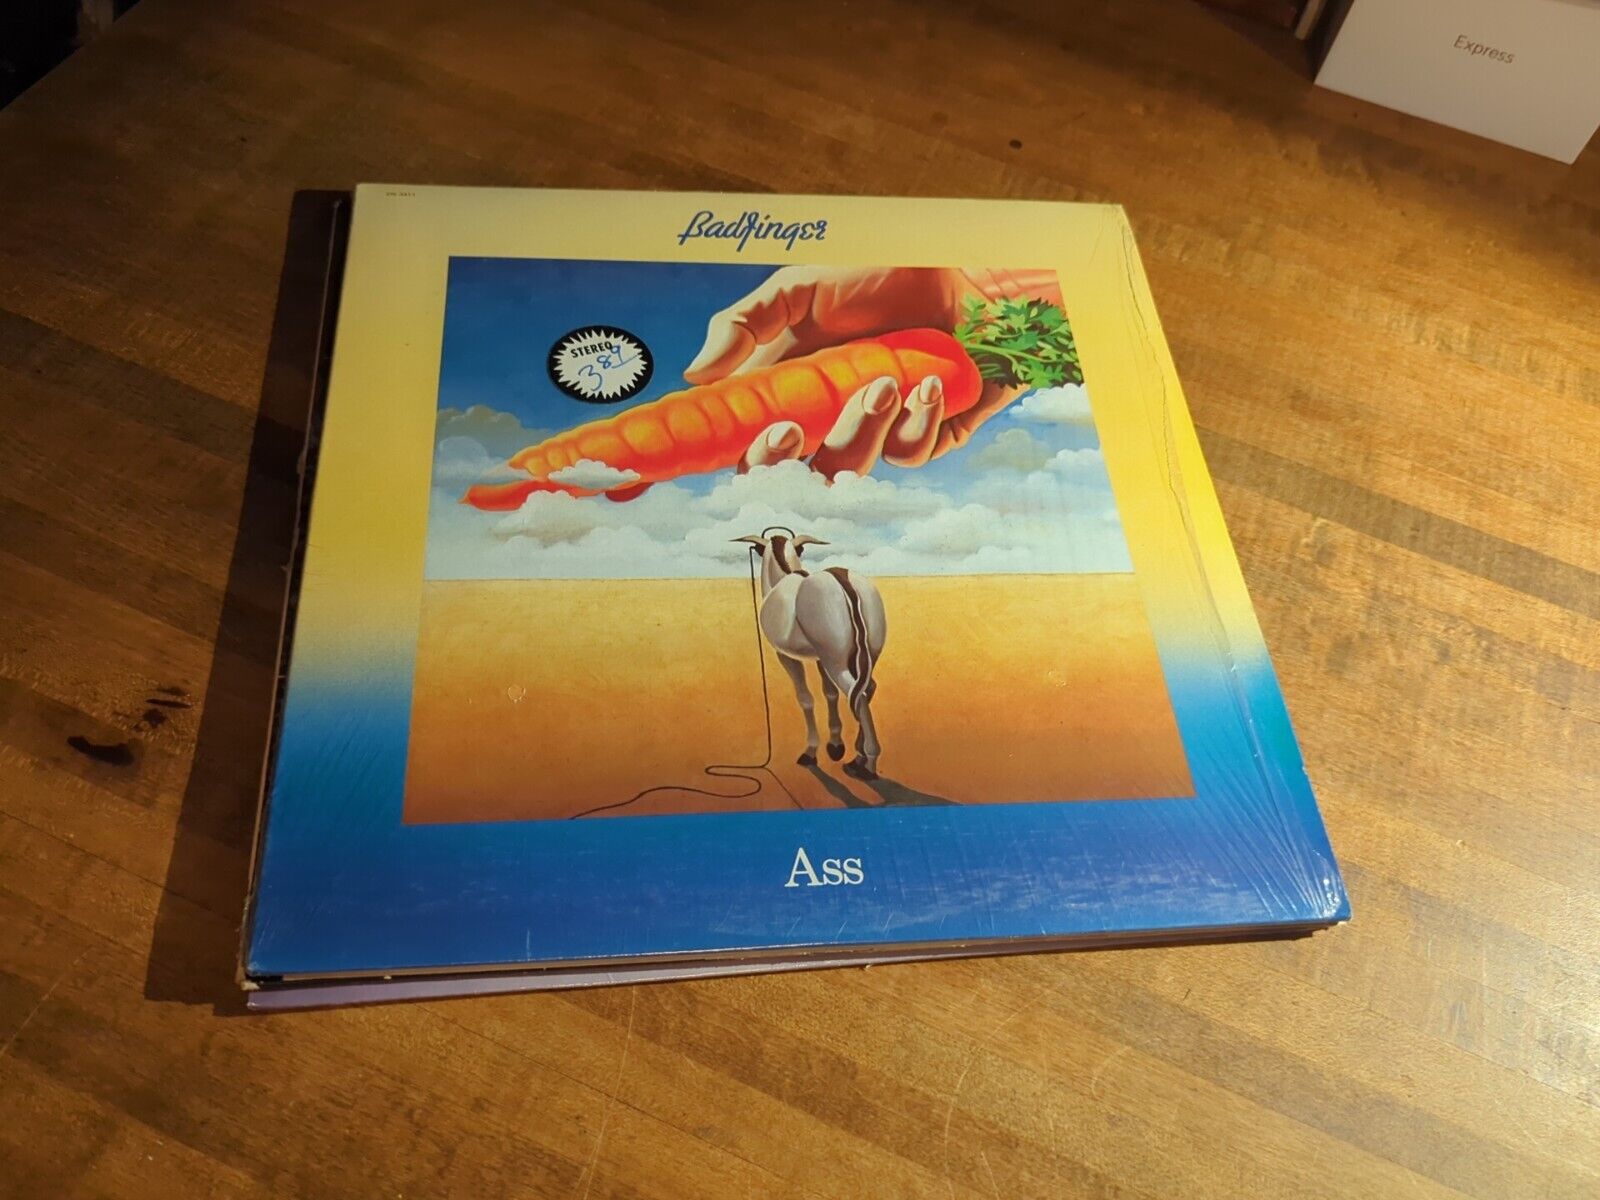 EX! Badfinger – Ass Original Apple press Vinyl Record LP Album SW-3411 1973